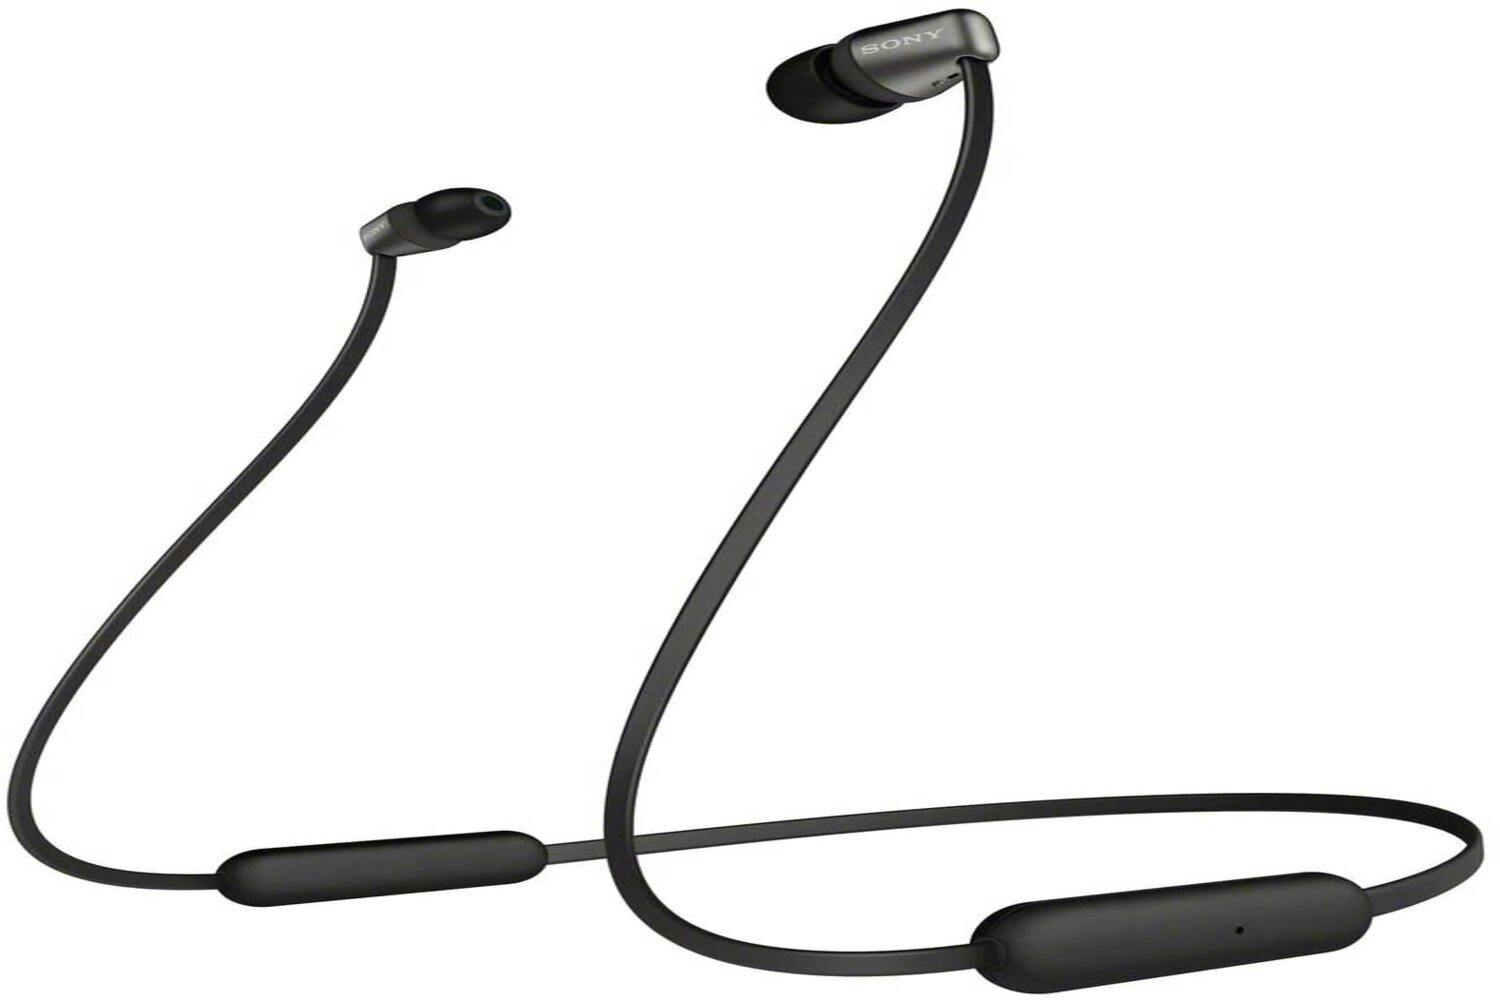 WI-C310 Wireless In-ear Headphones, WI-C310